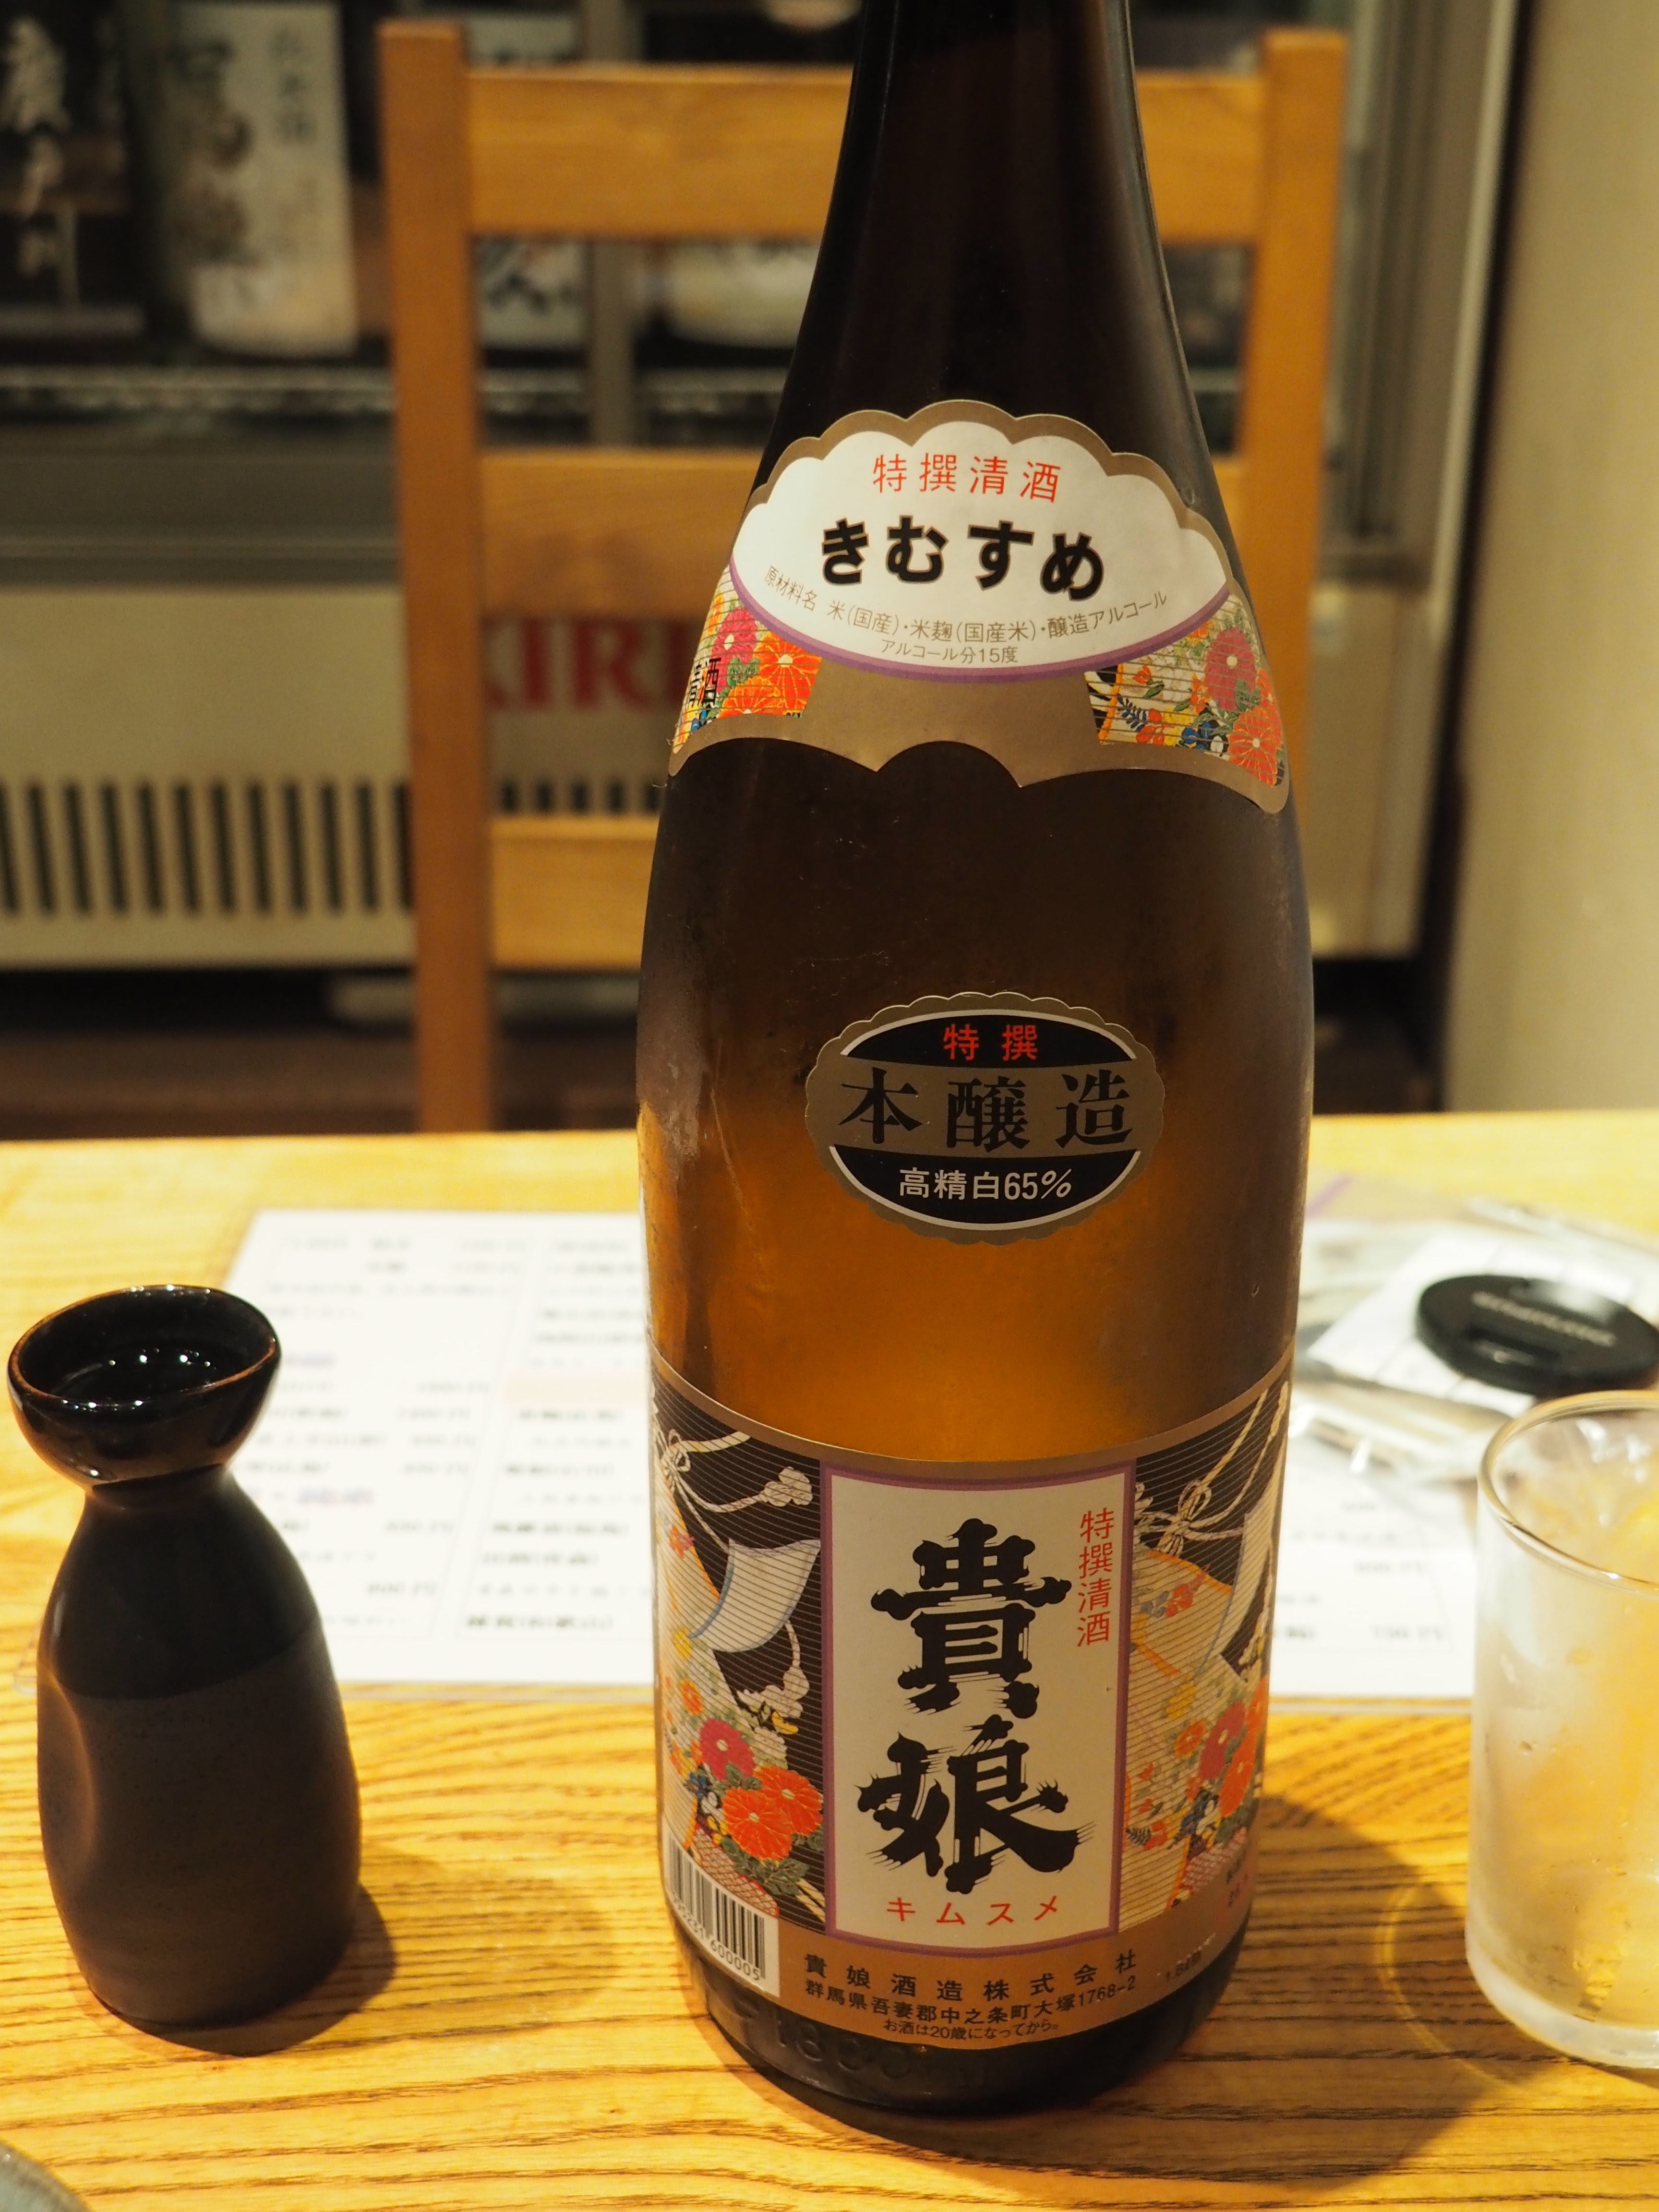 あなたは普通酒というコスパ最高の宝探しを知っているか 群馬の日本酒第二弾「貴娘」  酒すごろく